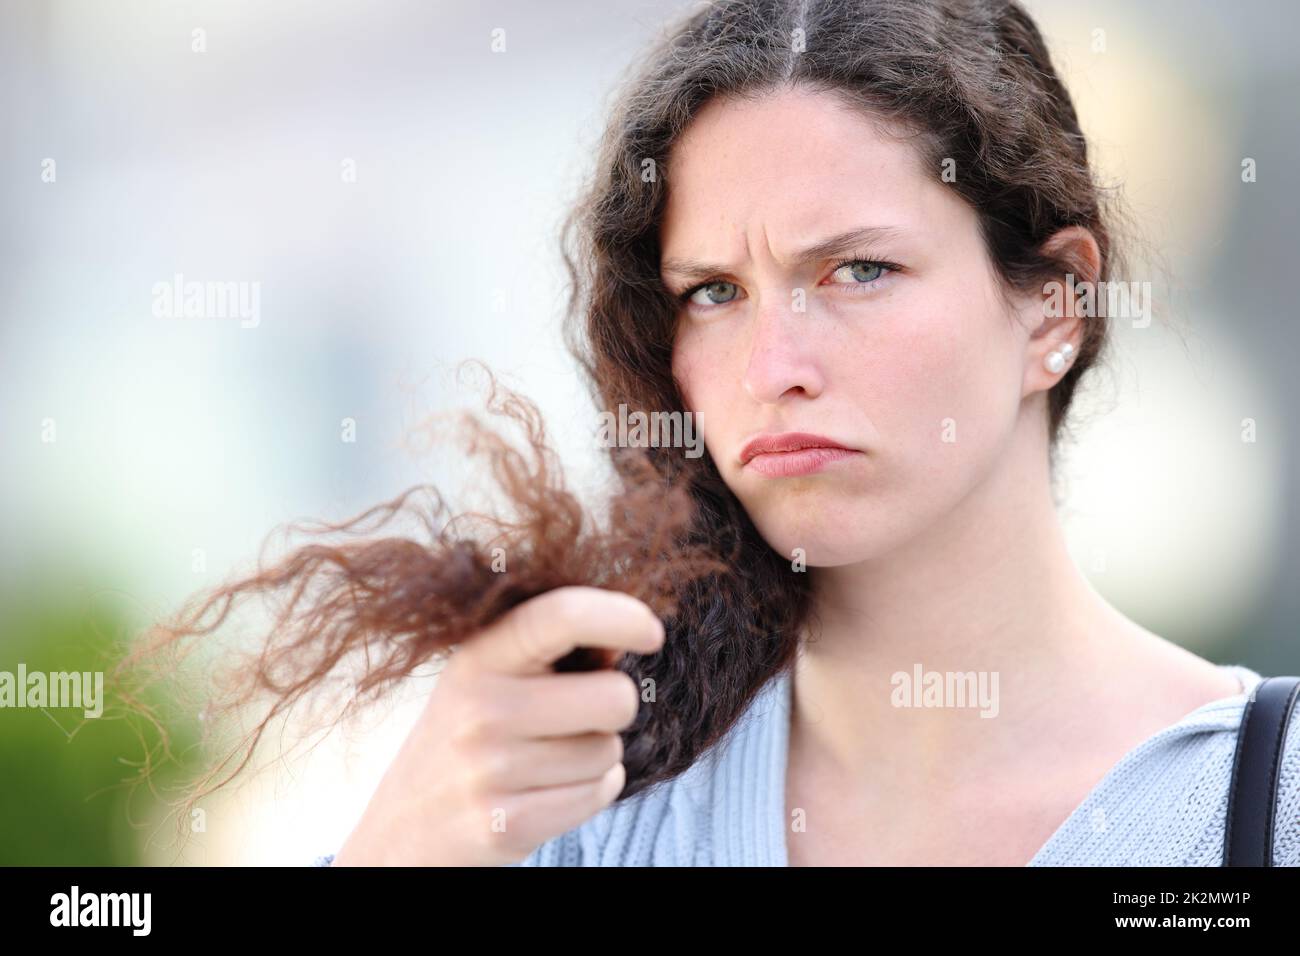 Une femme aux cheveux bouclés se plaint des extrémités fendues Banque D'Images